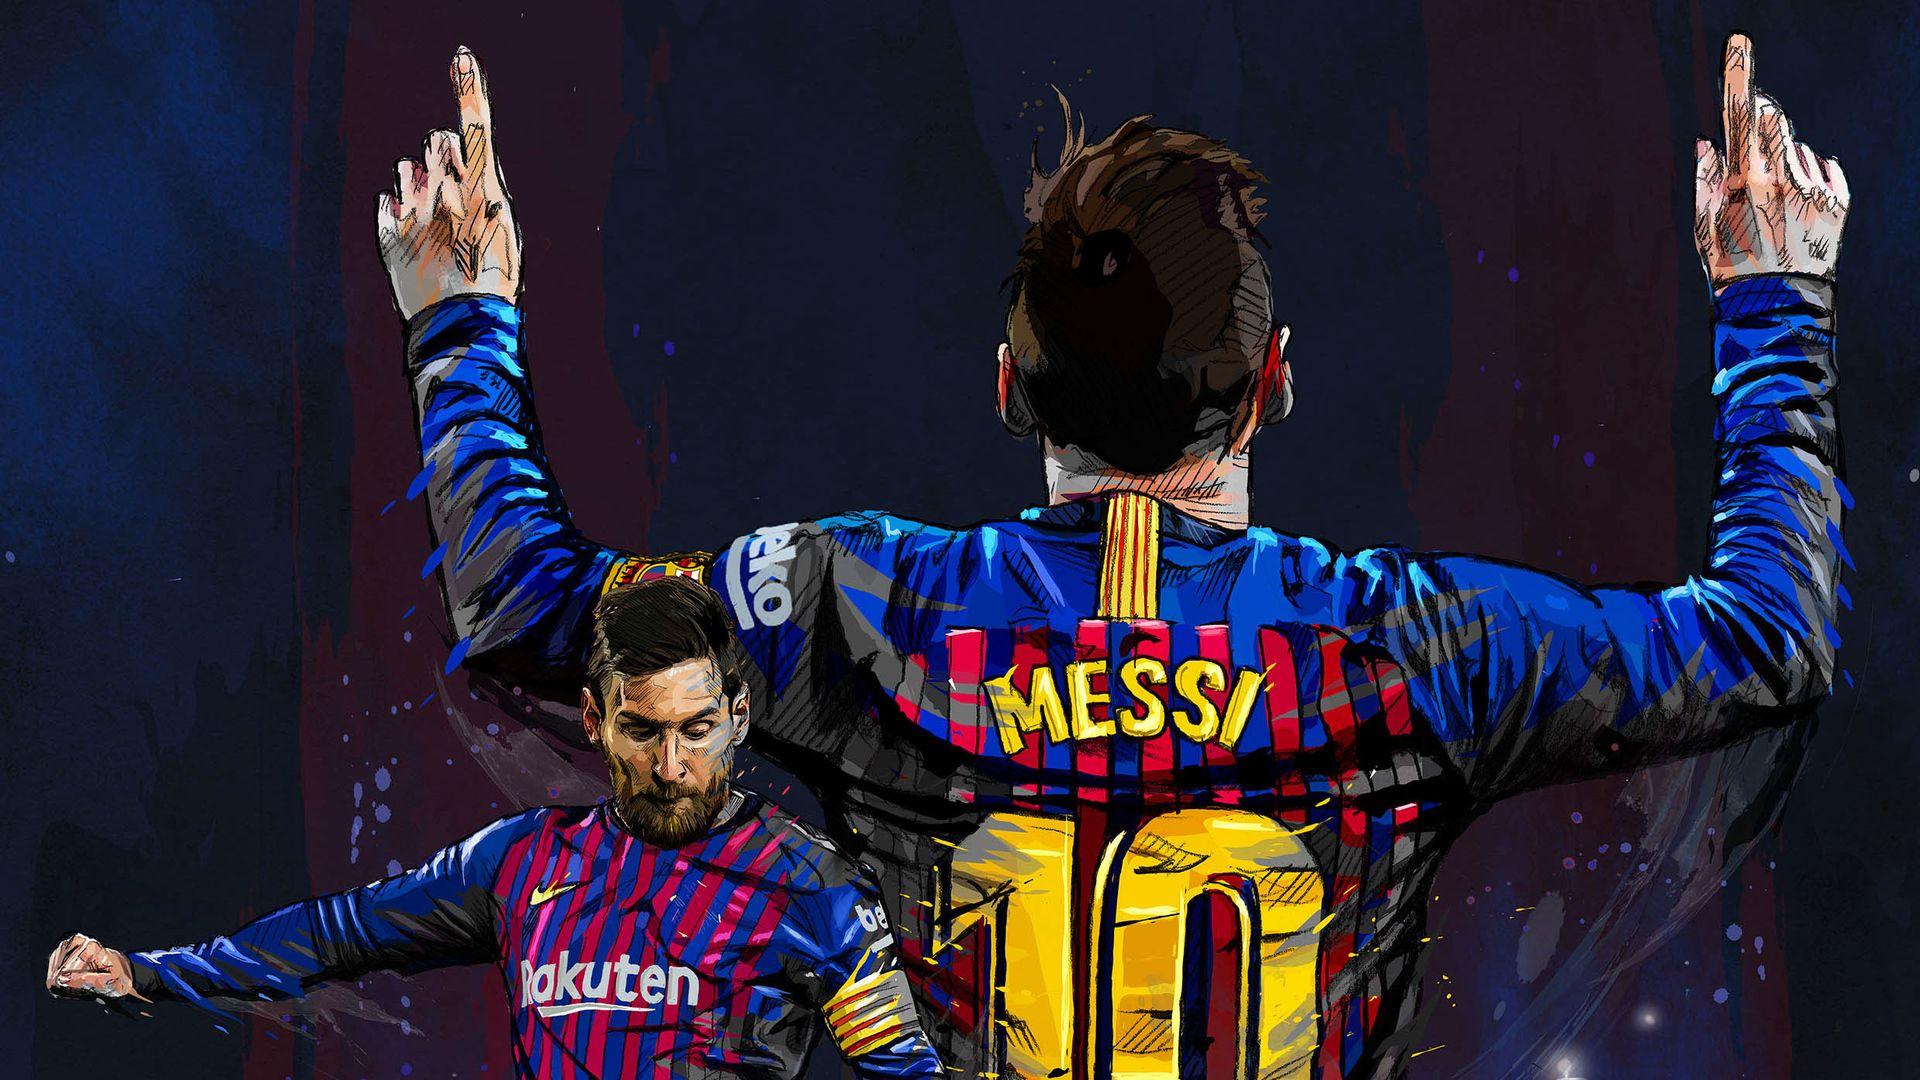 Với những bức hình nền Messi laptop wallpapers đẹp mắt, bạn đủ sức biến chiếc laptop của bạn thành một thế giới cá nhân đậm chất Messi. Khám phá ngay những hình nền Messi laptop wallpapers độc đáo và đẹp mắt này.